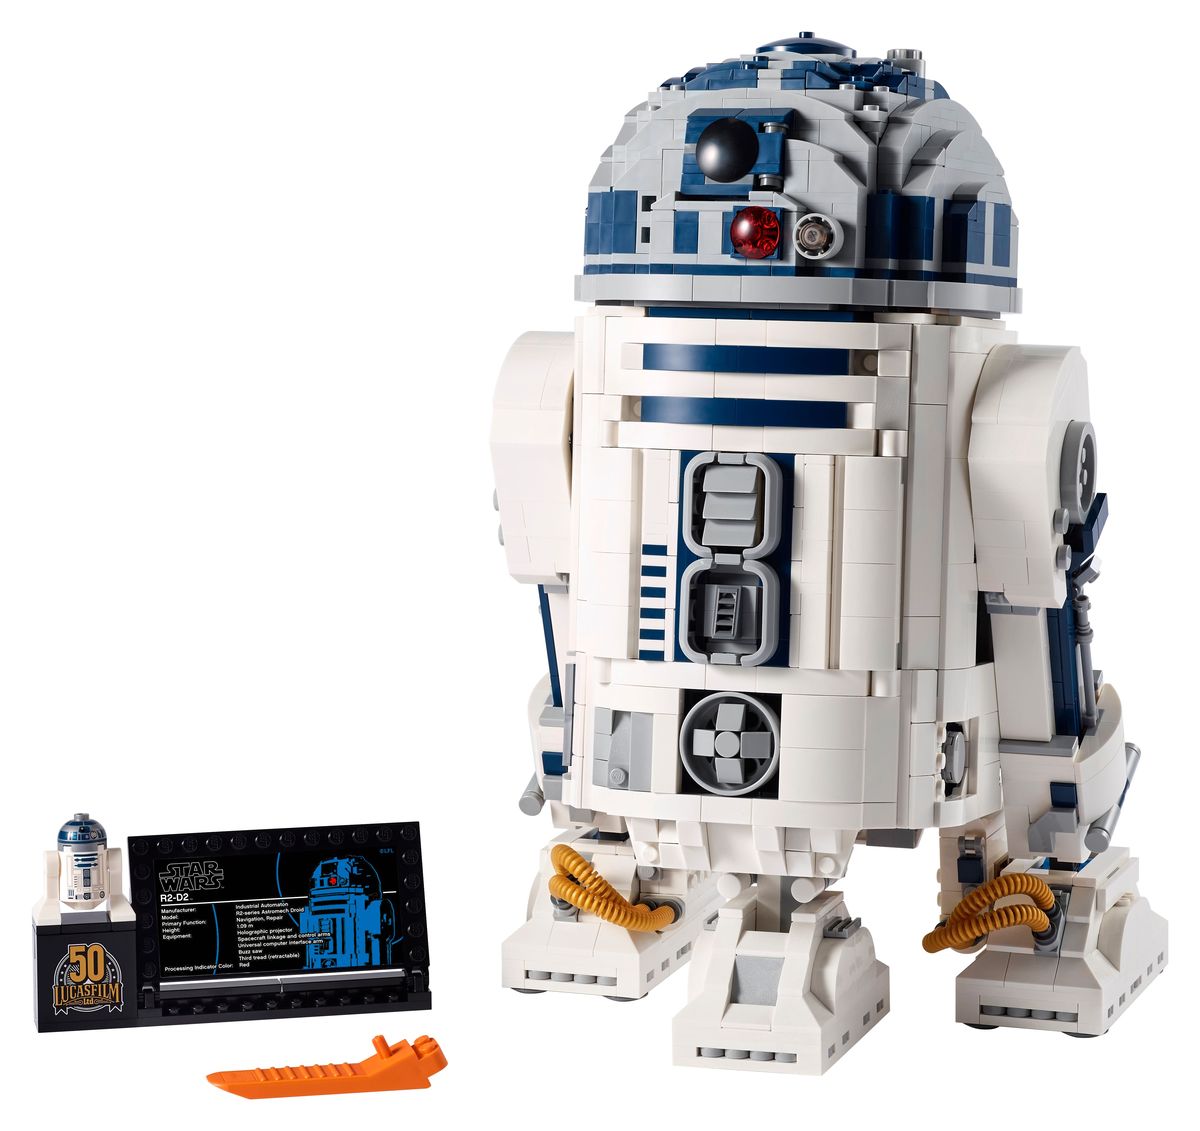 Gwiezdne wojny: LEGO debiutuje imponujący nowy zestaw R2-D2